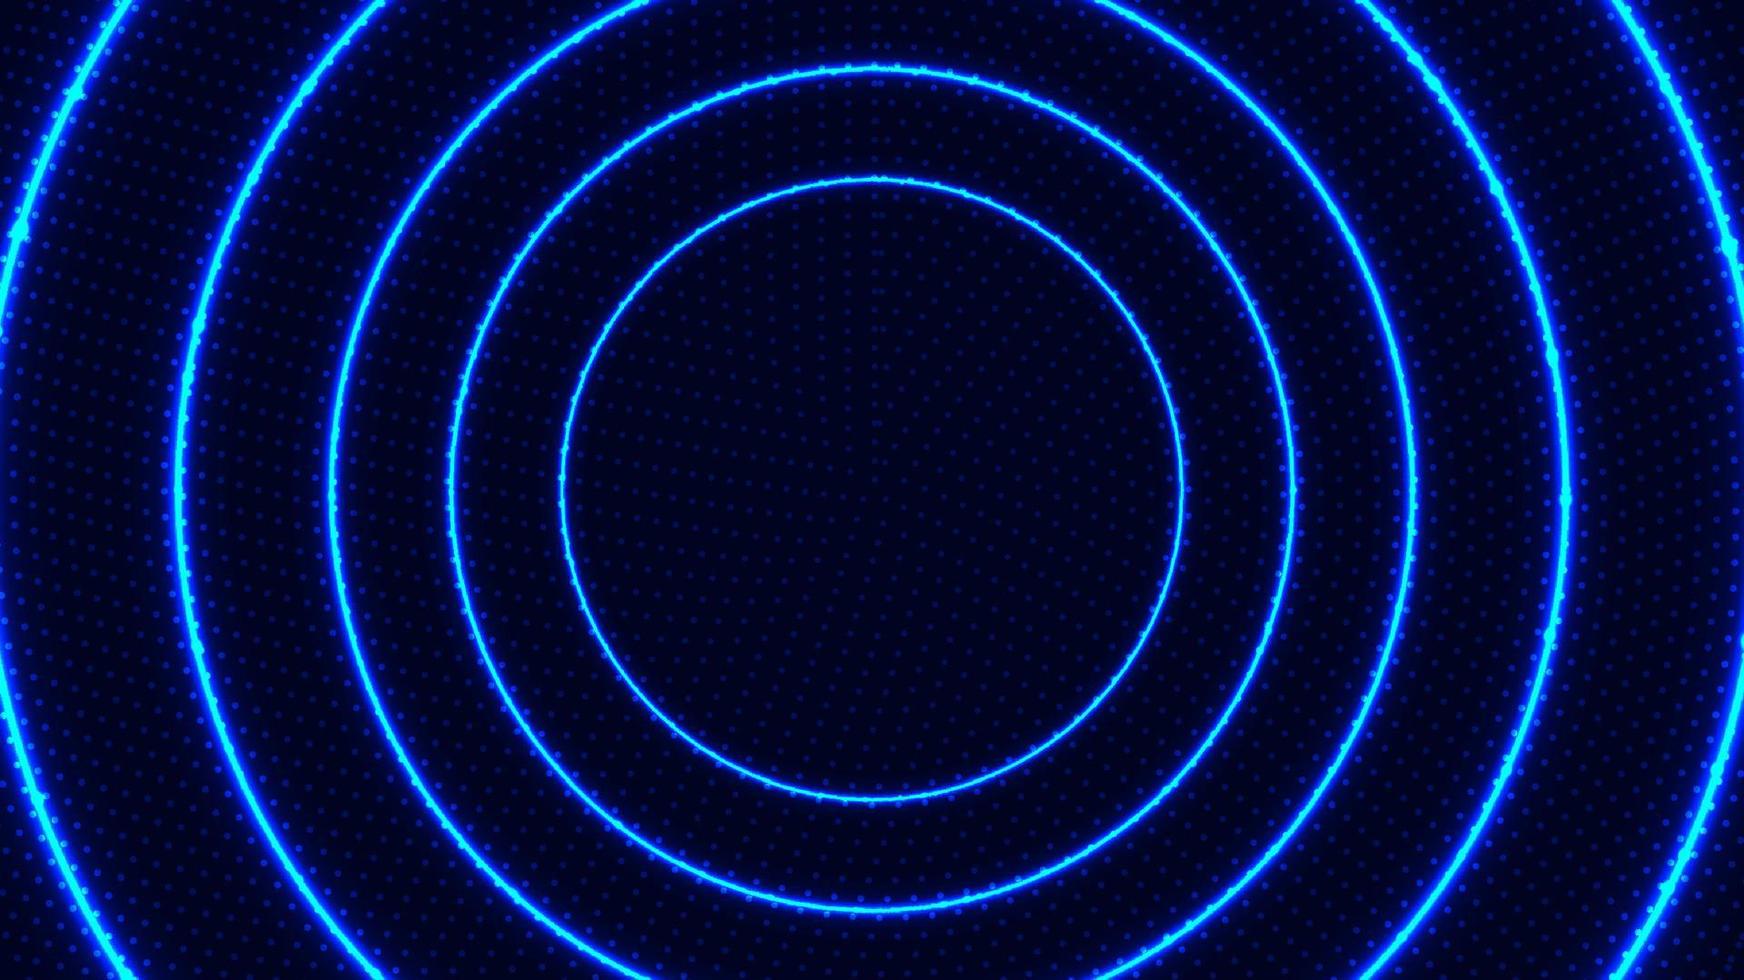 abstrakte radiale bewegungslinien kreisen blau leuchtende neonlichteffekte helle energiestrahlen mit punktpartikeln auf dunklem hintergrund vektor